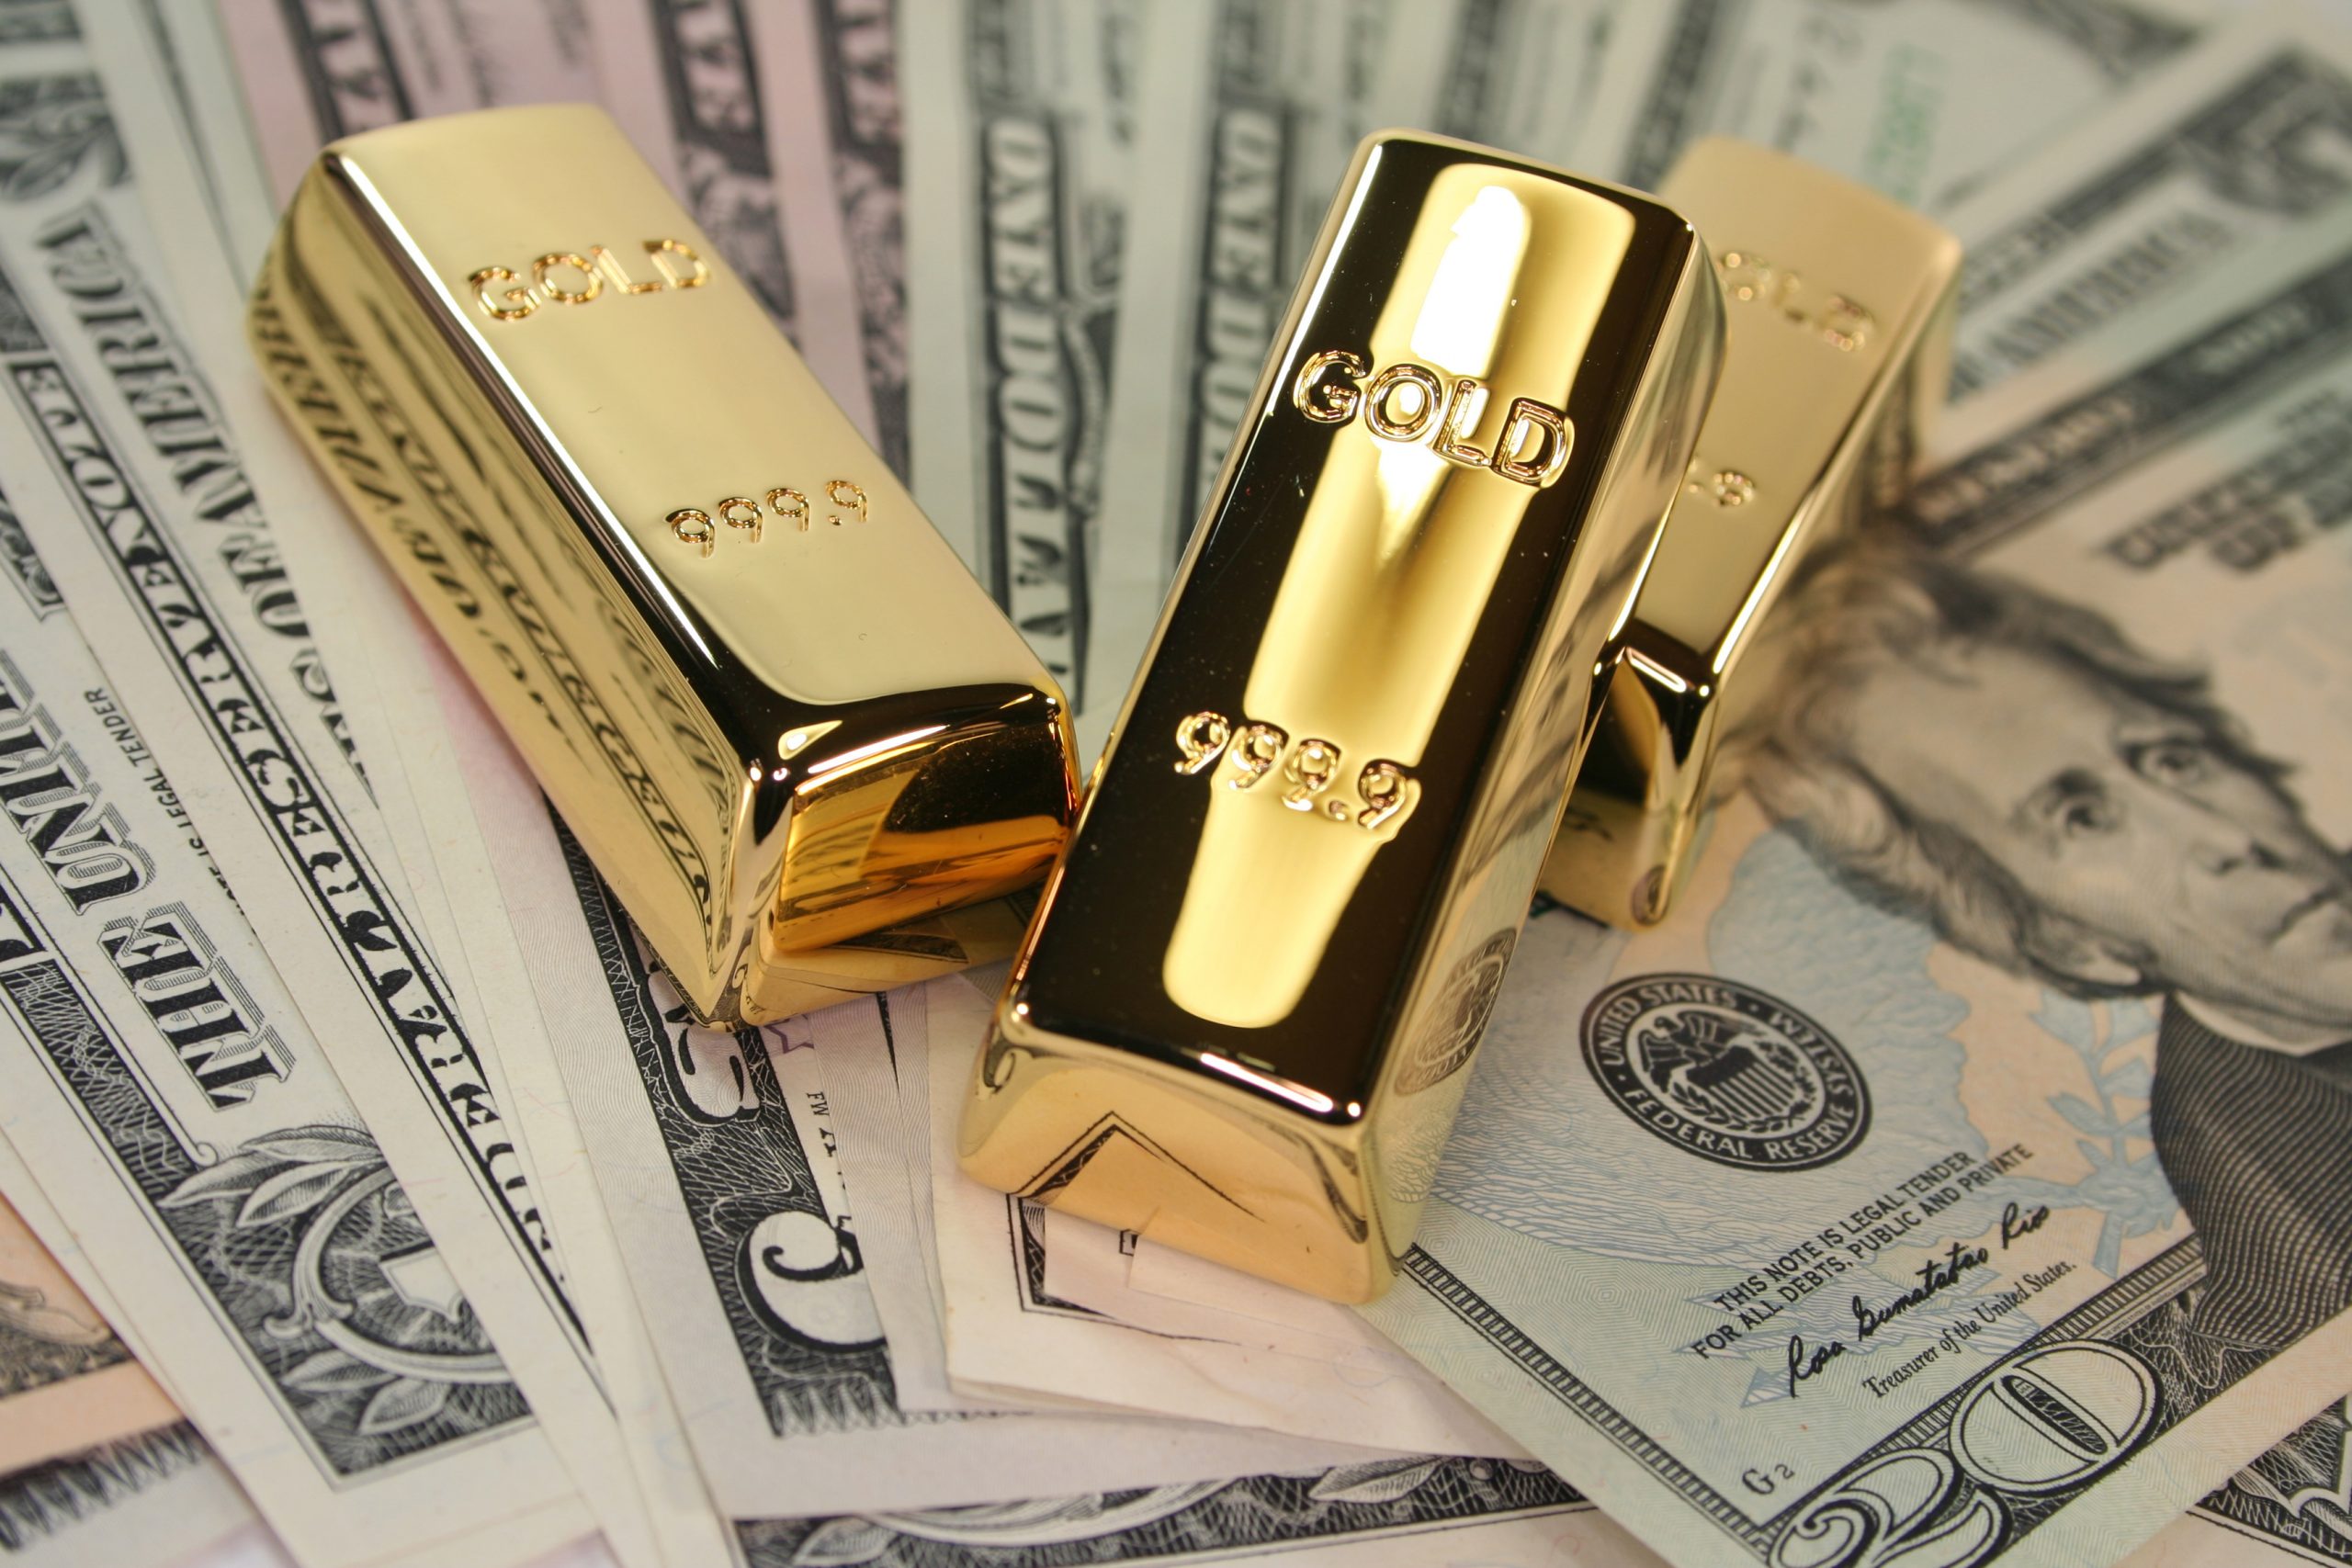 Goldv bars and American bills